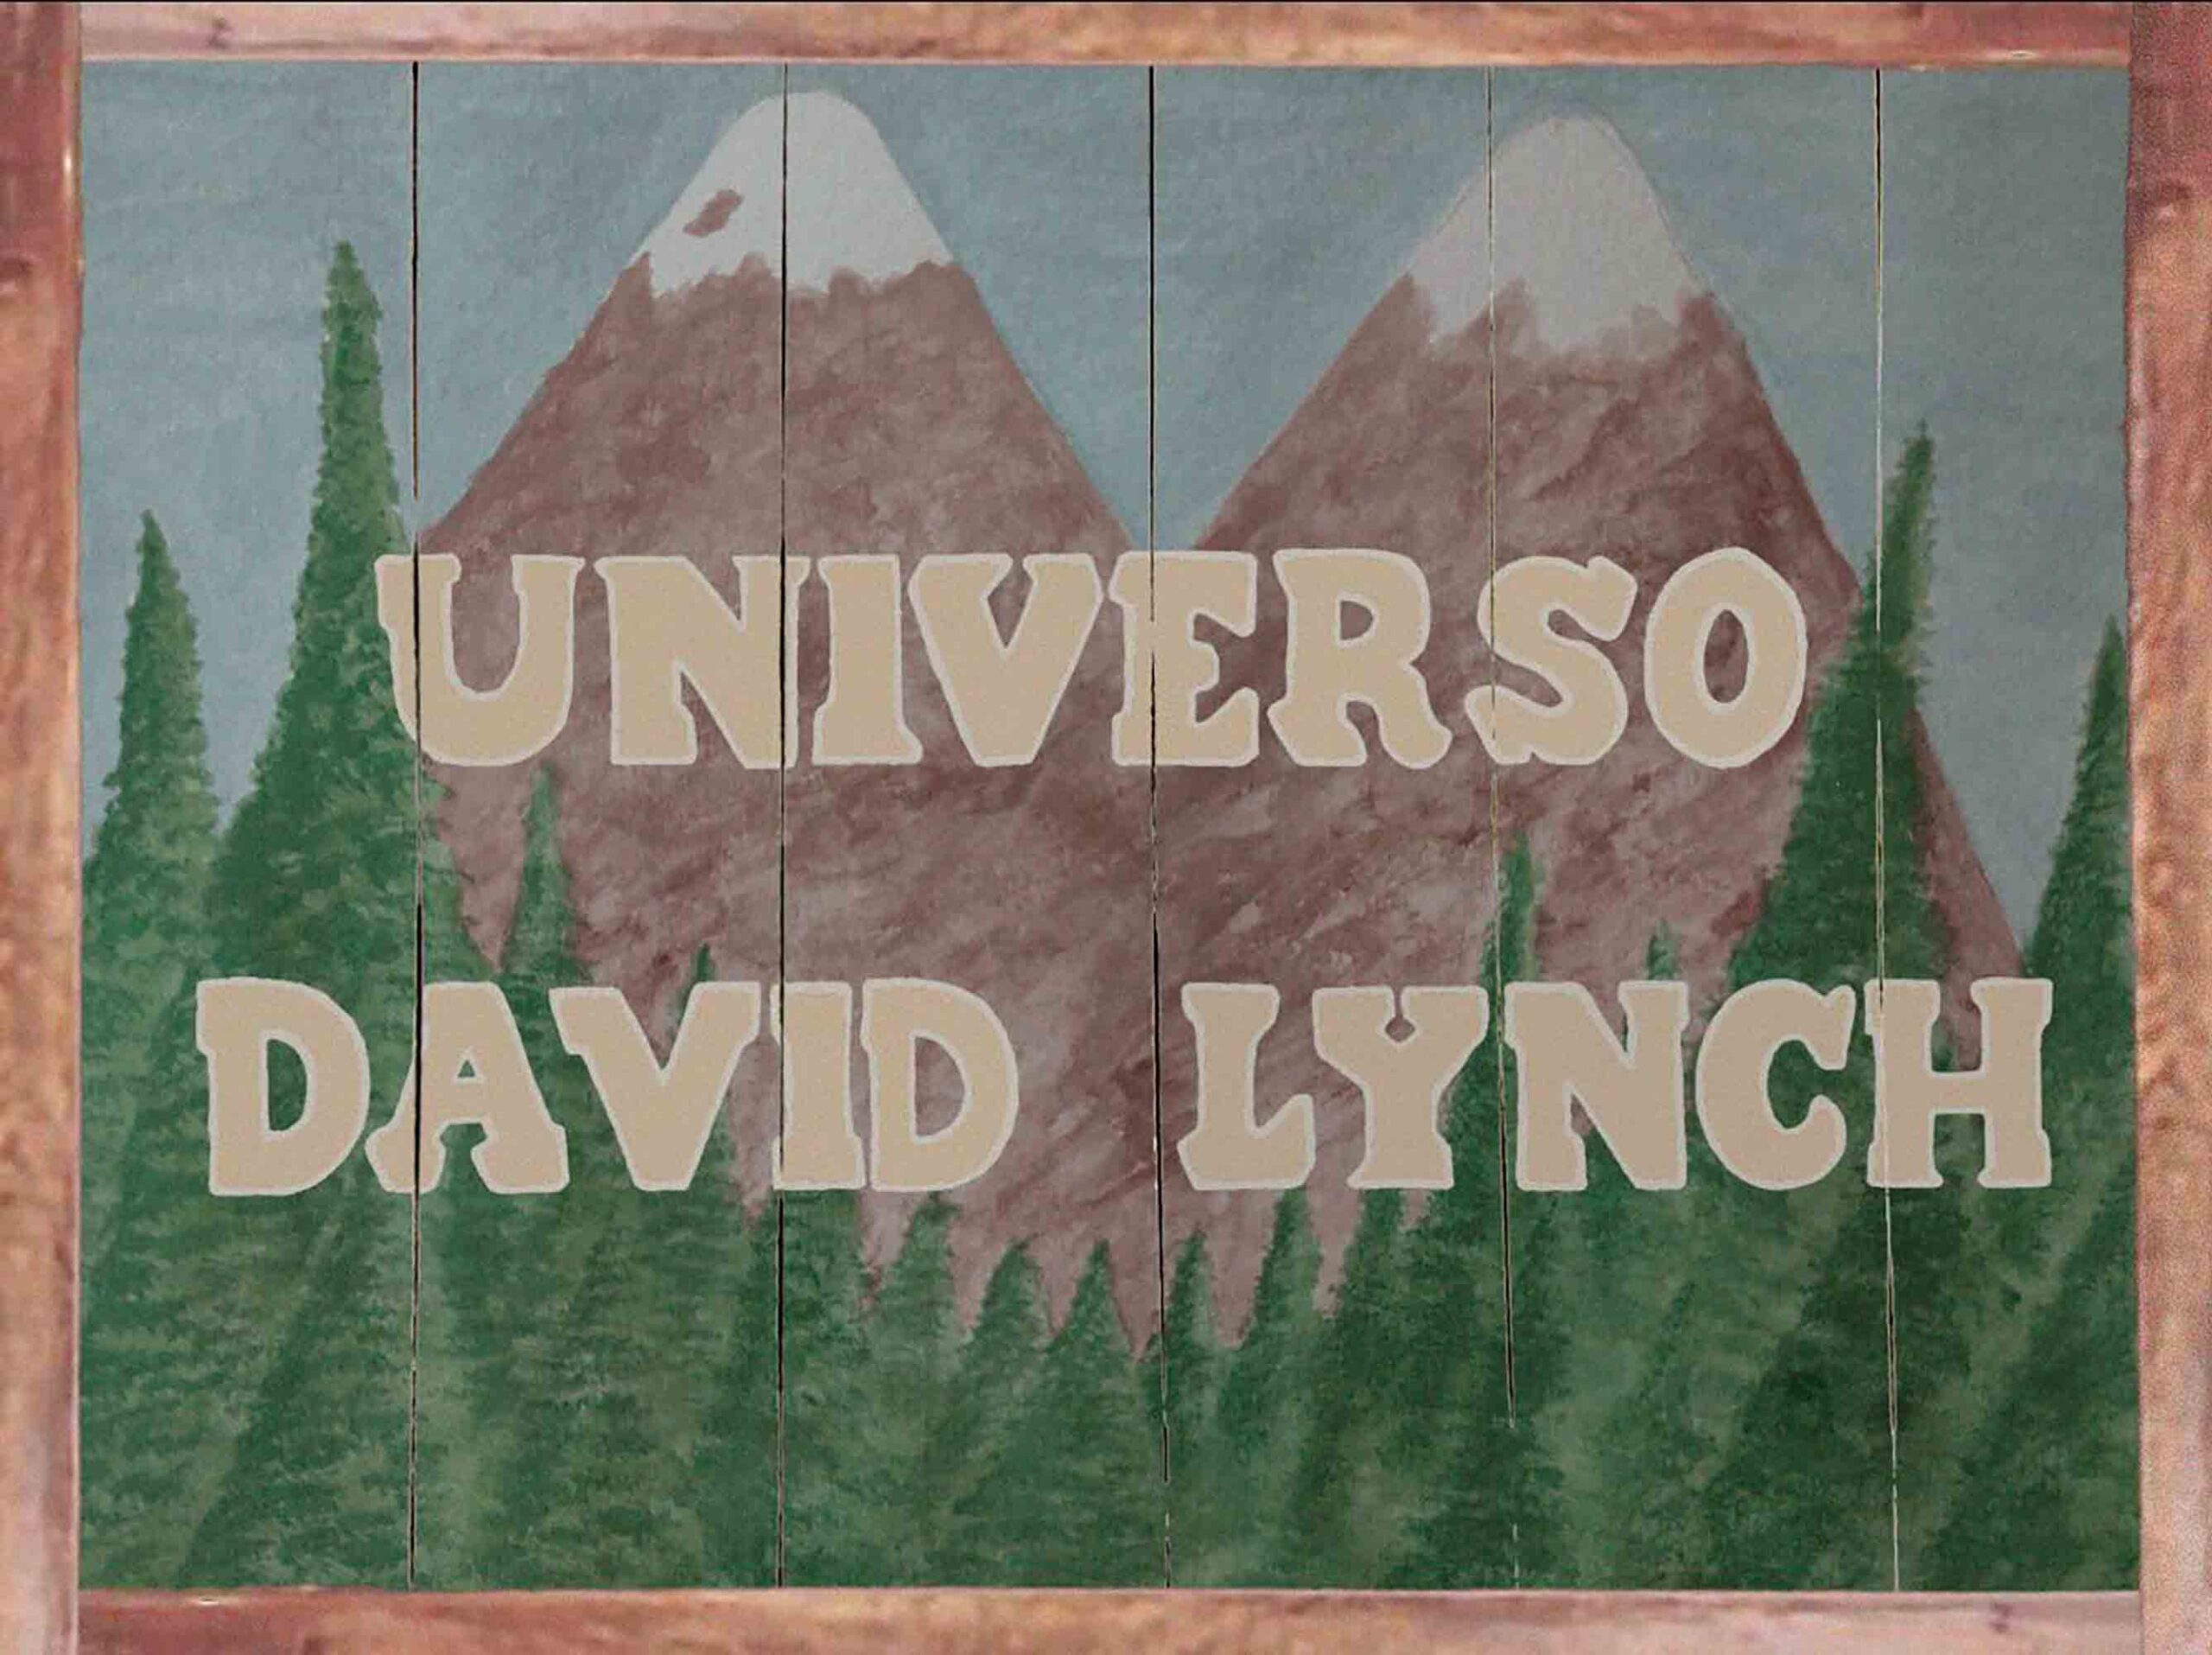 En junio podremos visitar el espacio Universo David Lynch